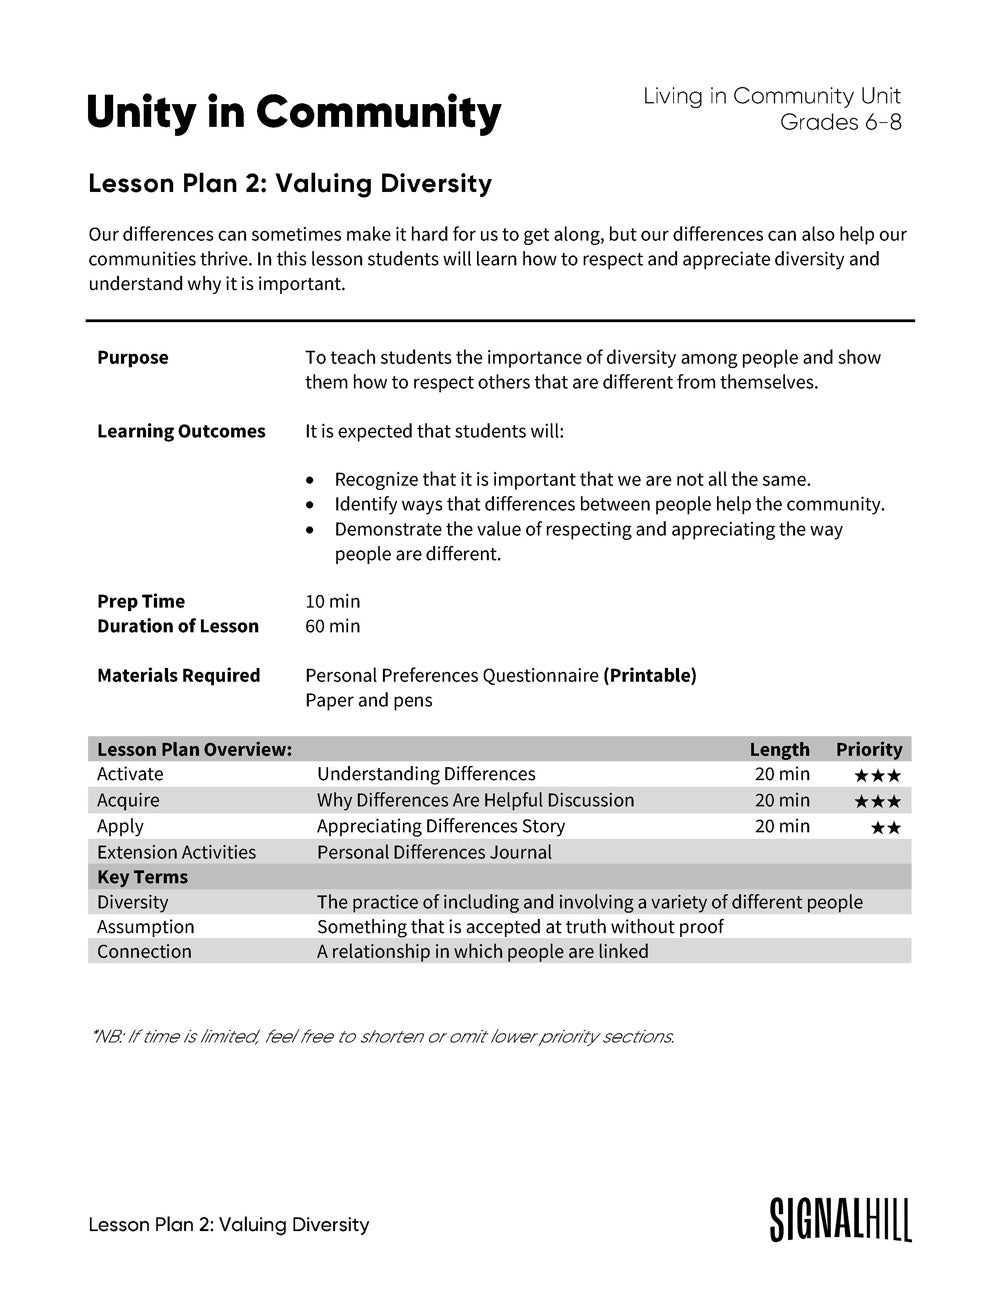 Unity in Community - Lesson Plan Bundle (4 Lesson Plans)